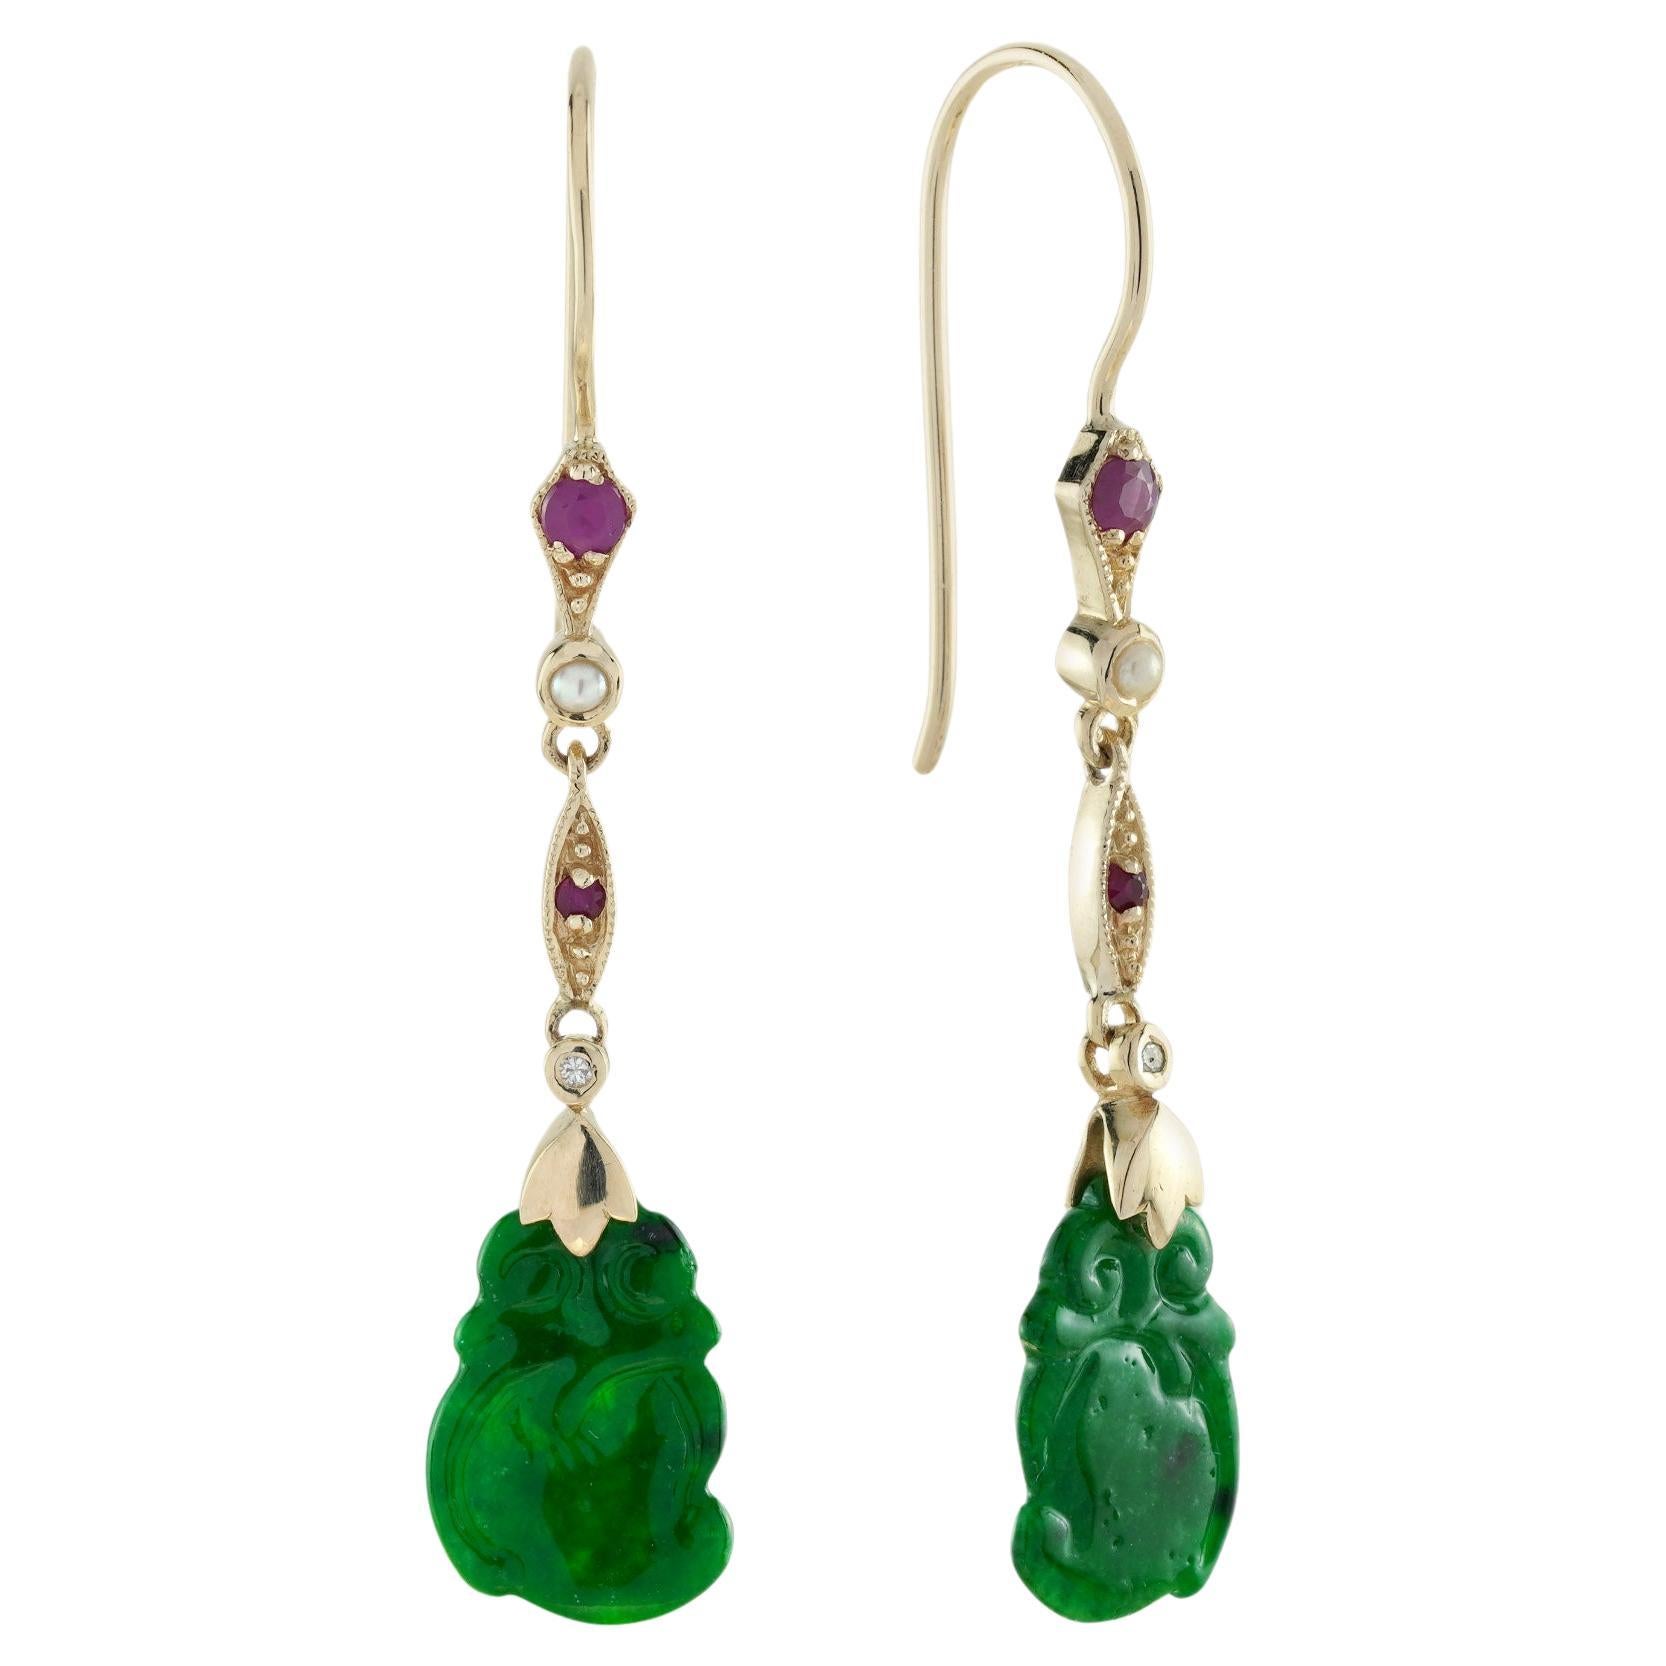 Pendants d'oreilles de style vintage en or jaune 9 carats, perles de jade sculptées, rubis et diamants